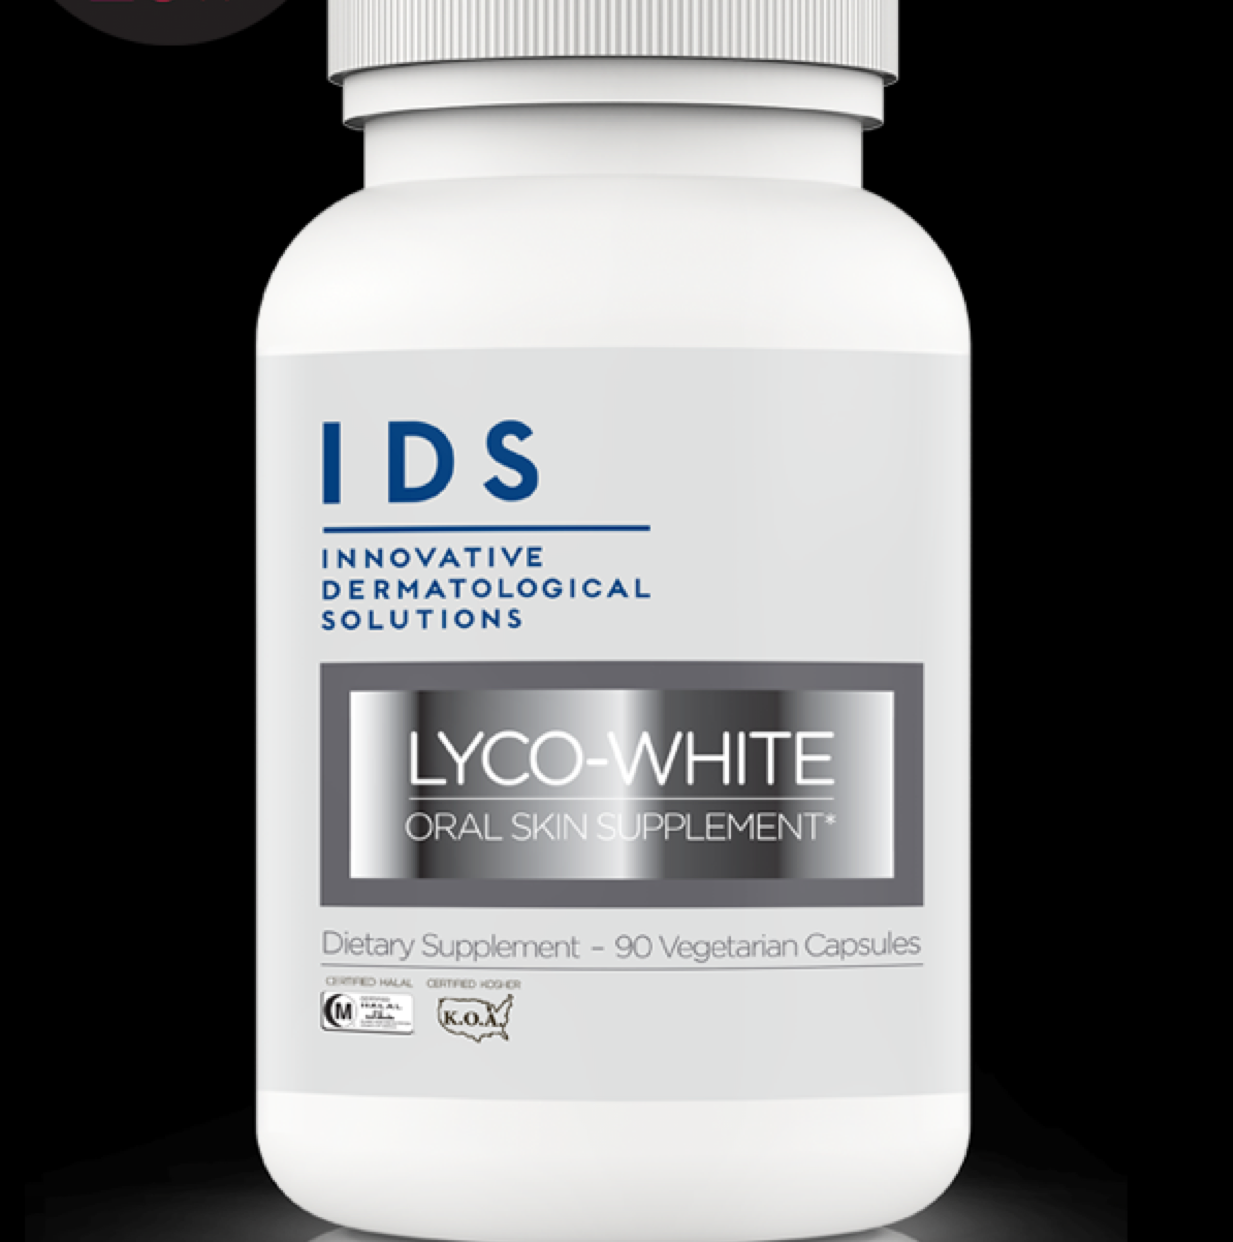 Lyco-White